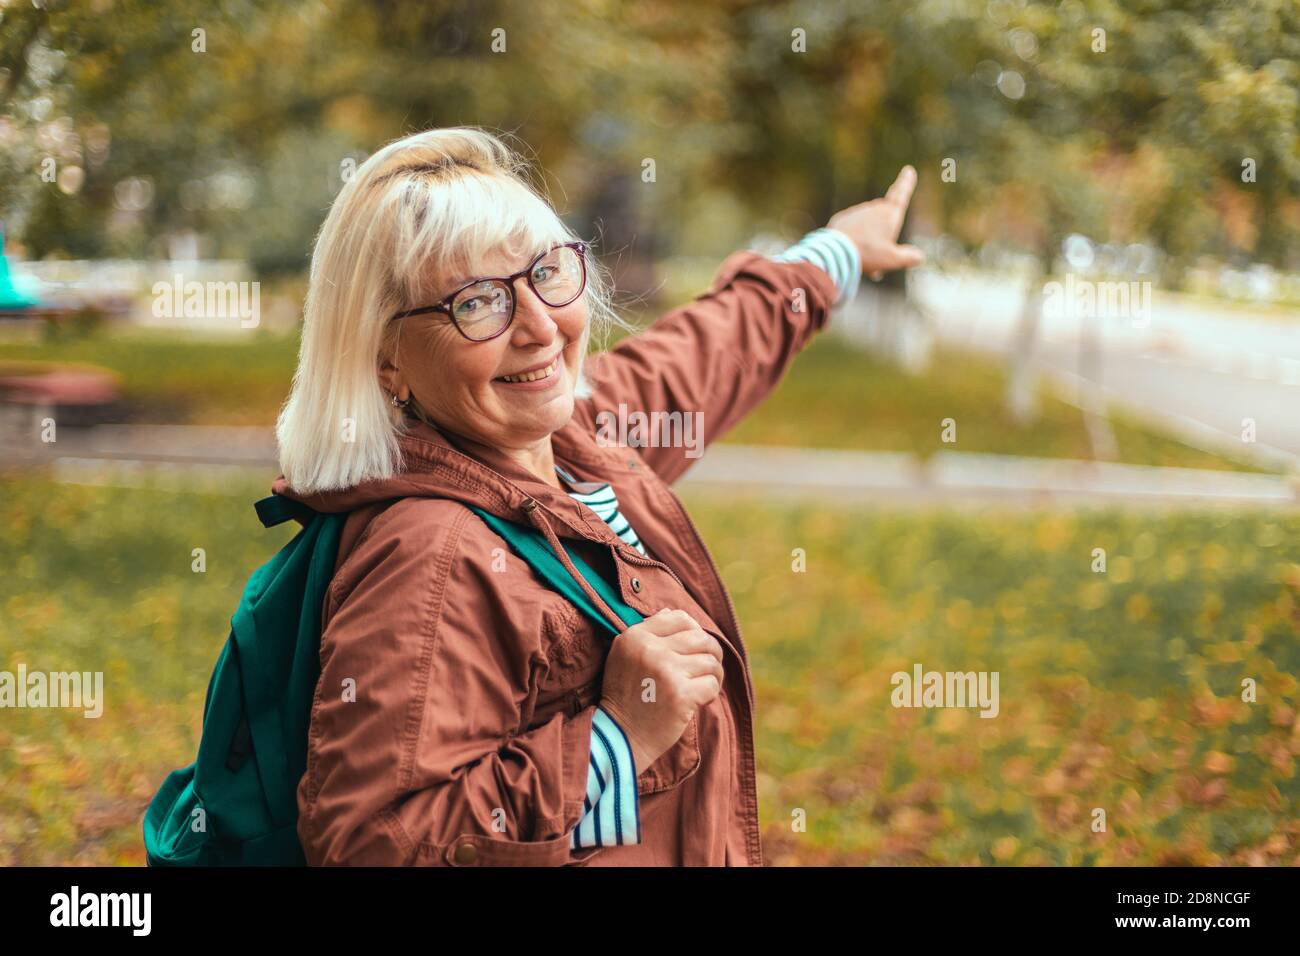 Erwachsene blonde Frau in bequemer Kleidung mit Rucksack zeigt die Richtung im Park mit dem Finger. Touristenreisender in einem wunderschönen Ort Stockfoto